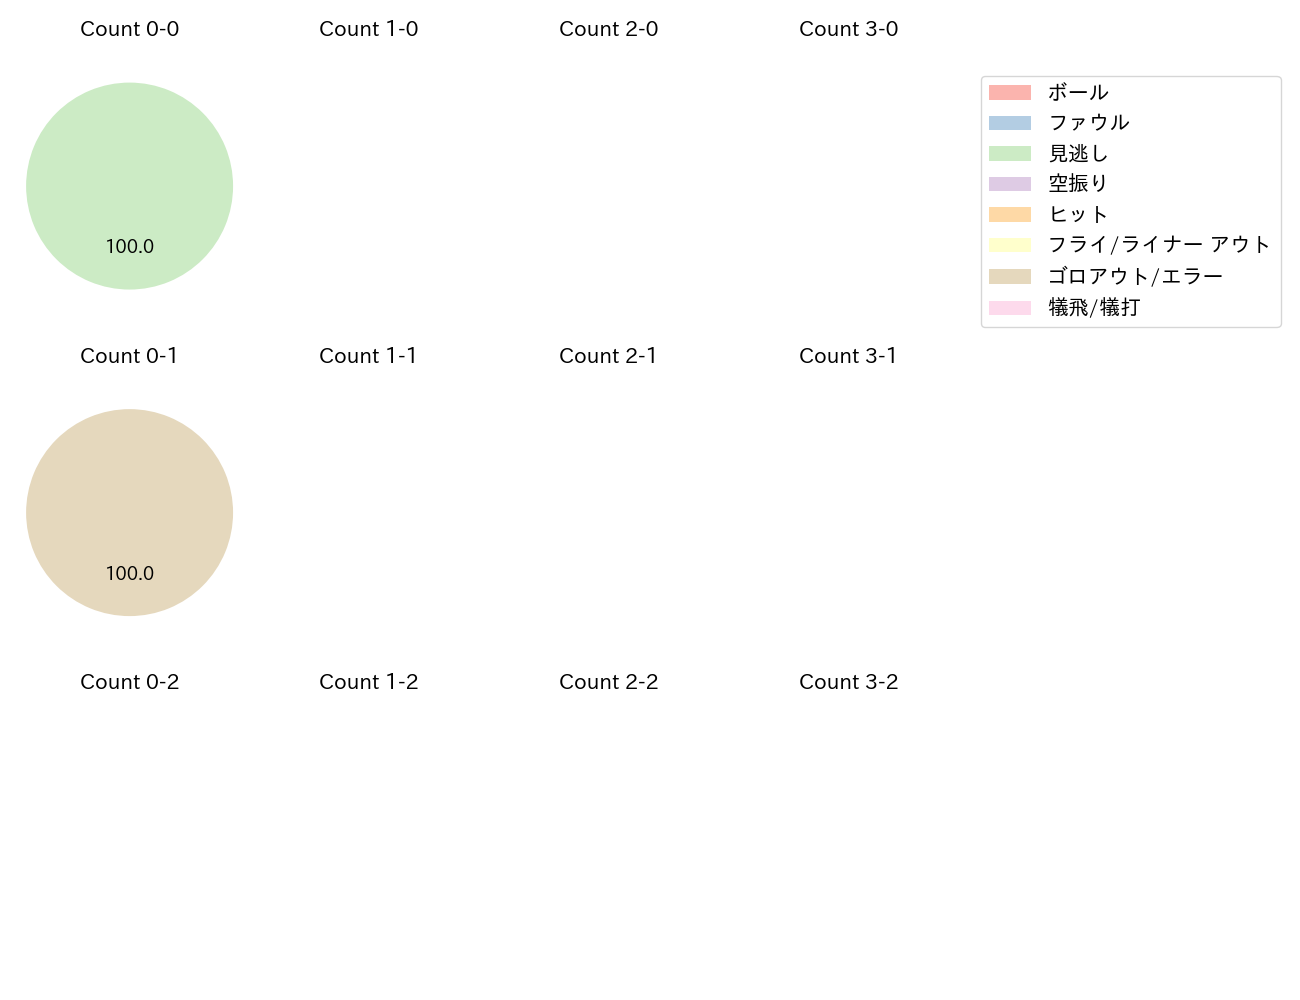 岩貞 祐太の球数分布(2021年4月)